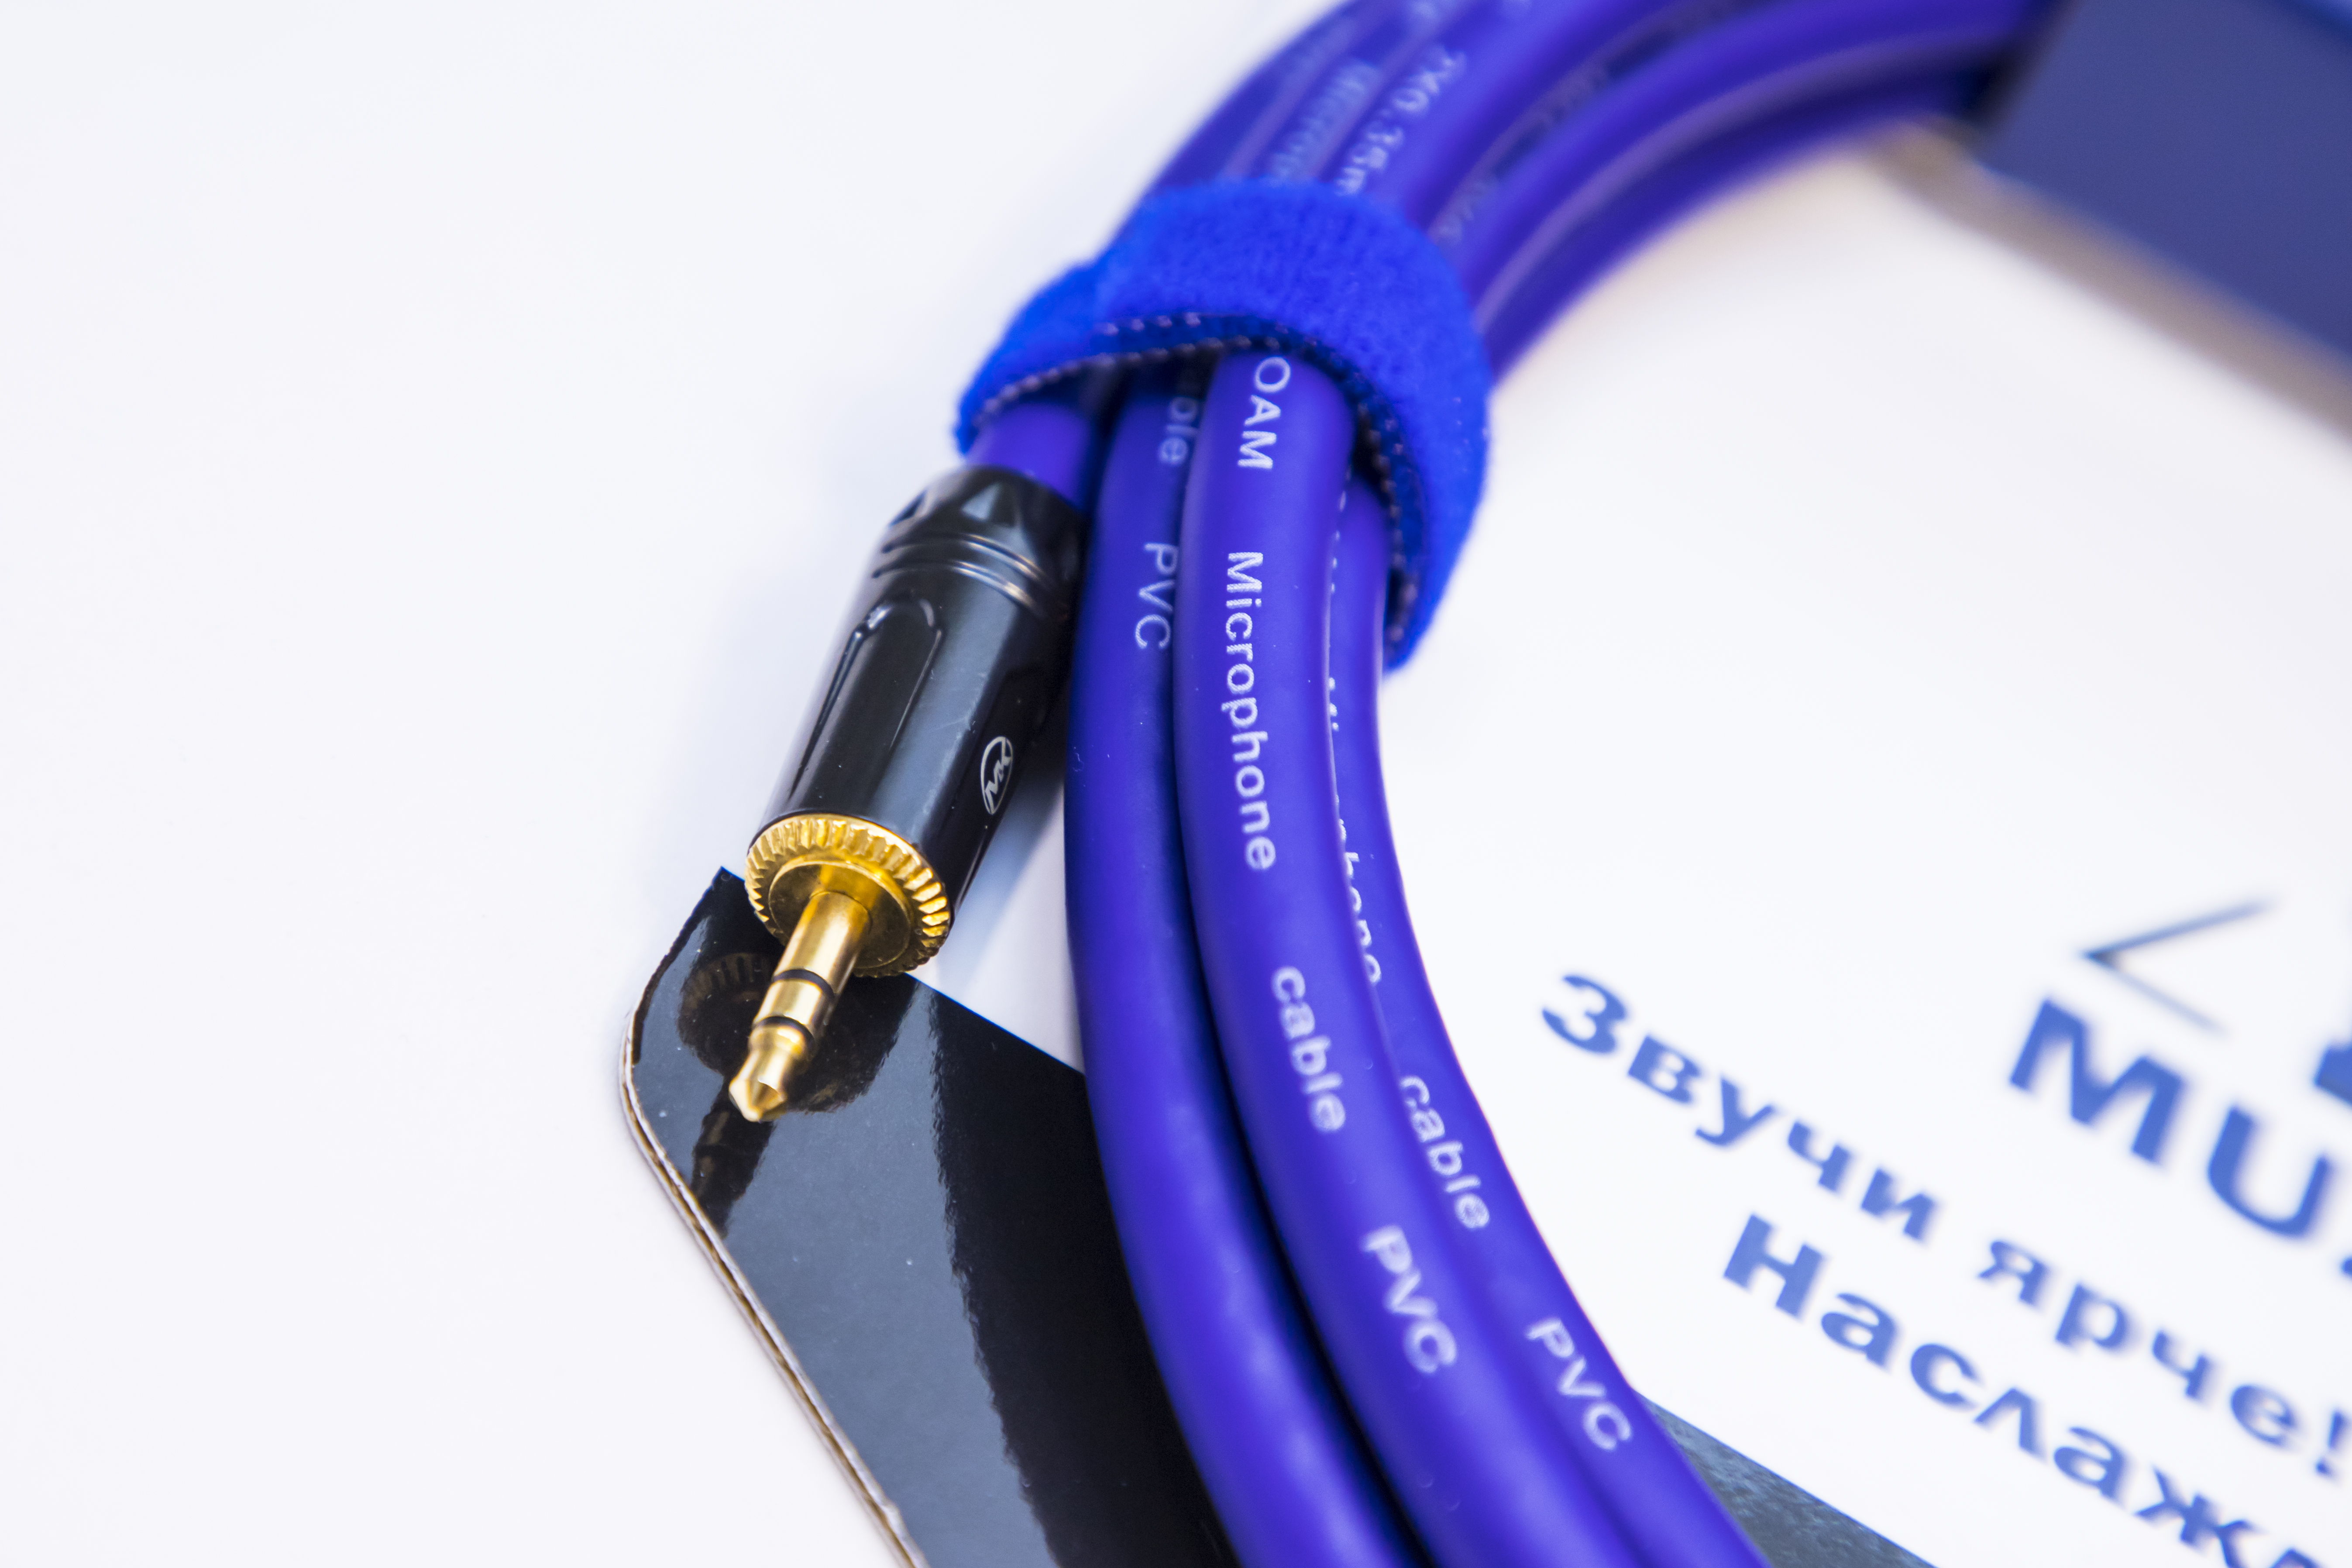 Аудио кабель MUZKABEL MFXMK1V - 6 метров, MINI JACK (3.5) - MINI JACK (3.5)